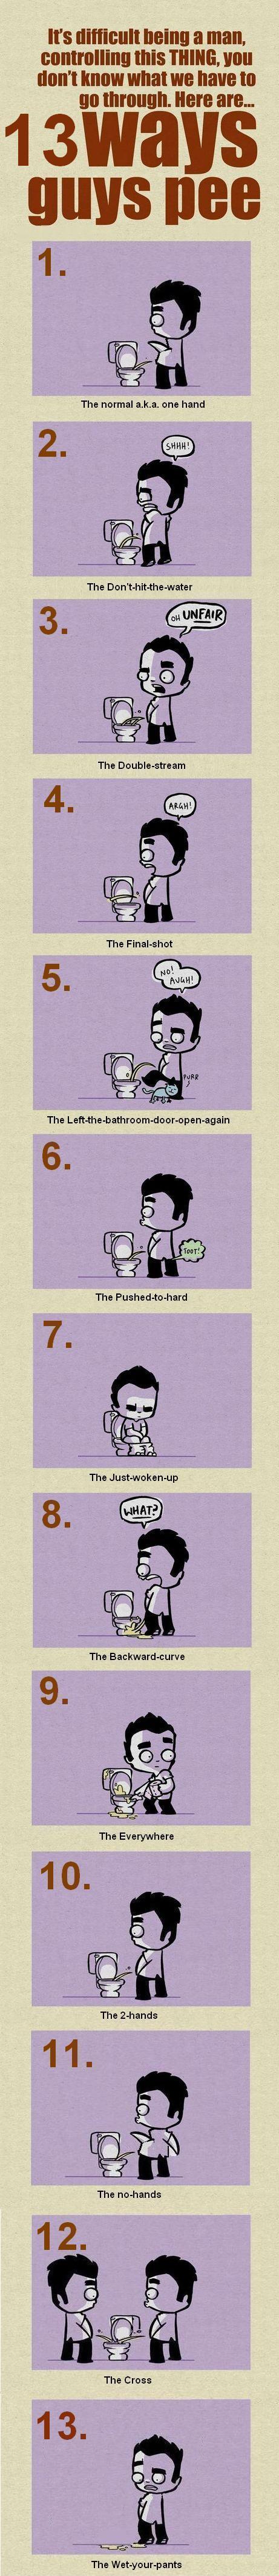 13 ways guys pee